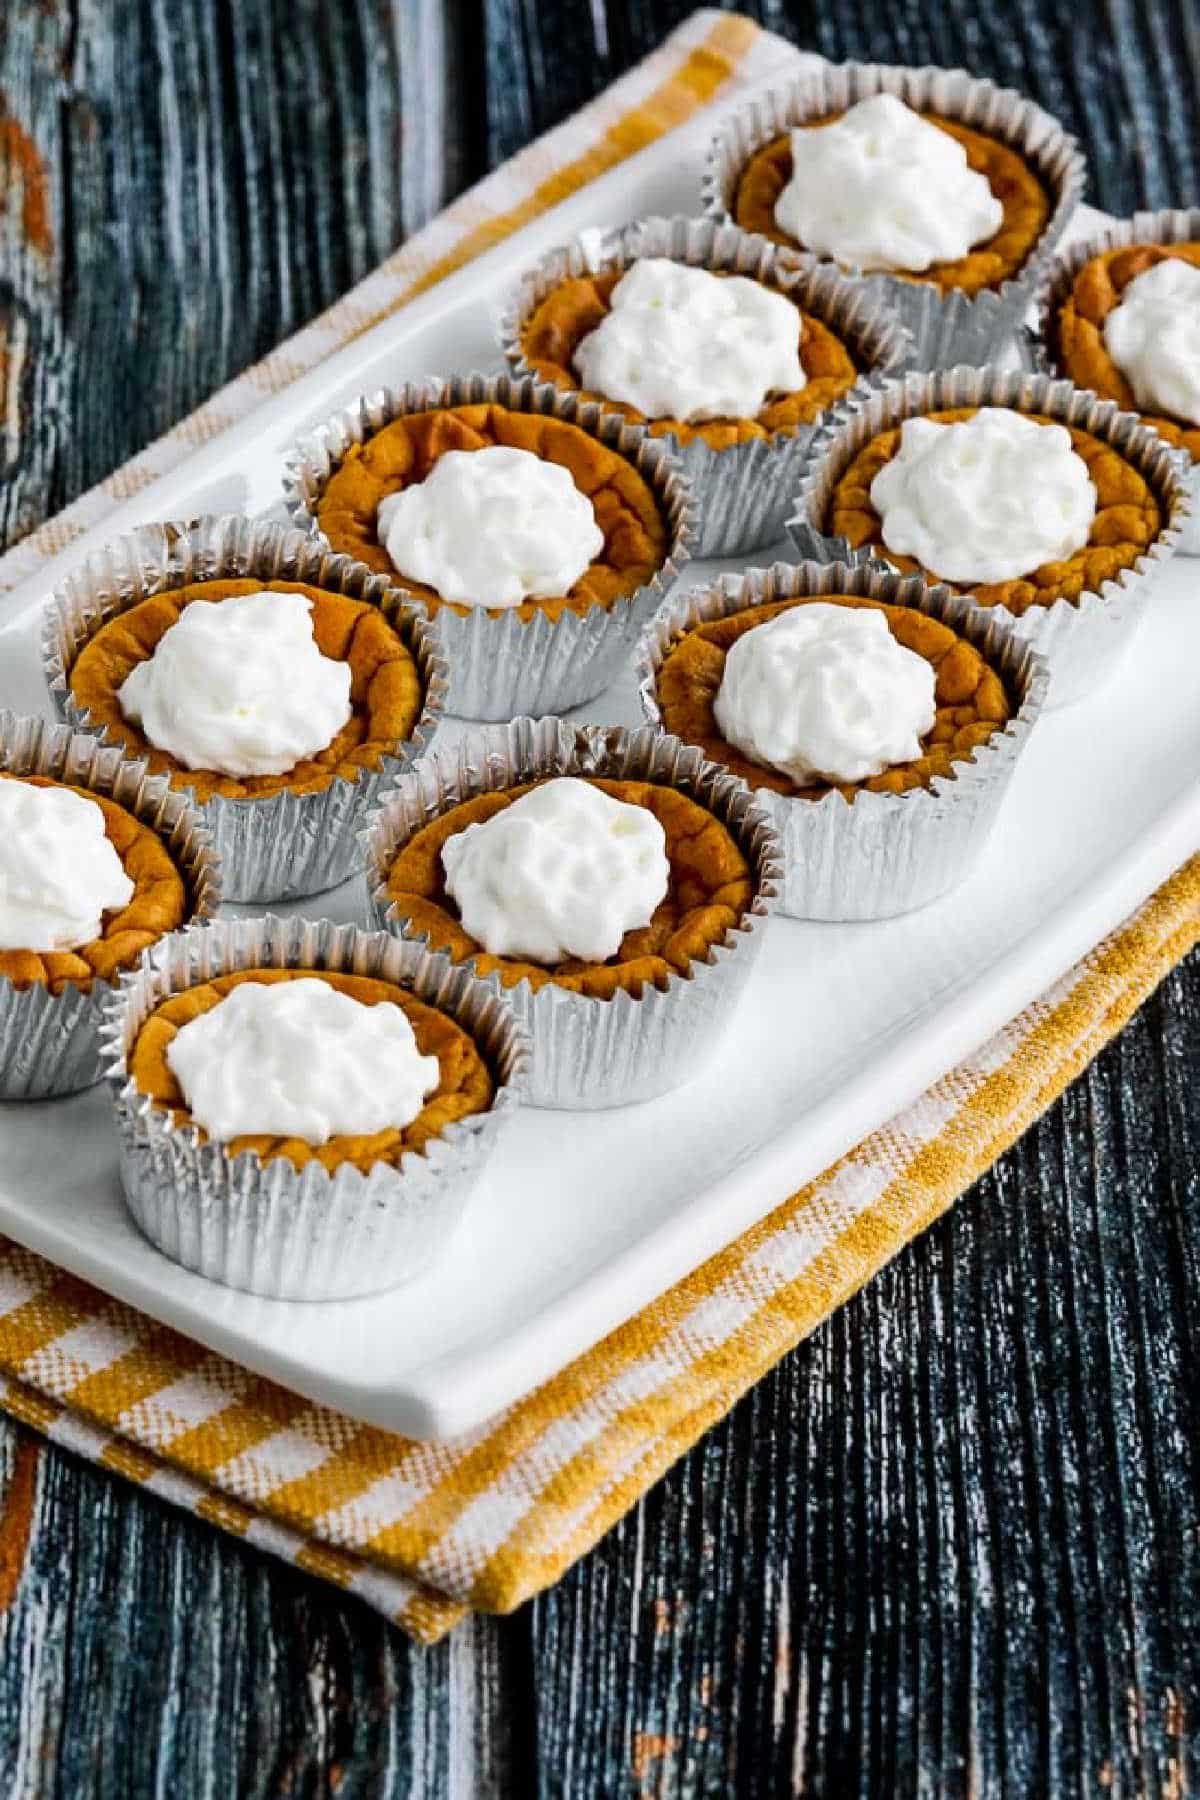 10 Mini Pumpkin Cheesecakes on platter